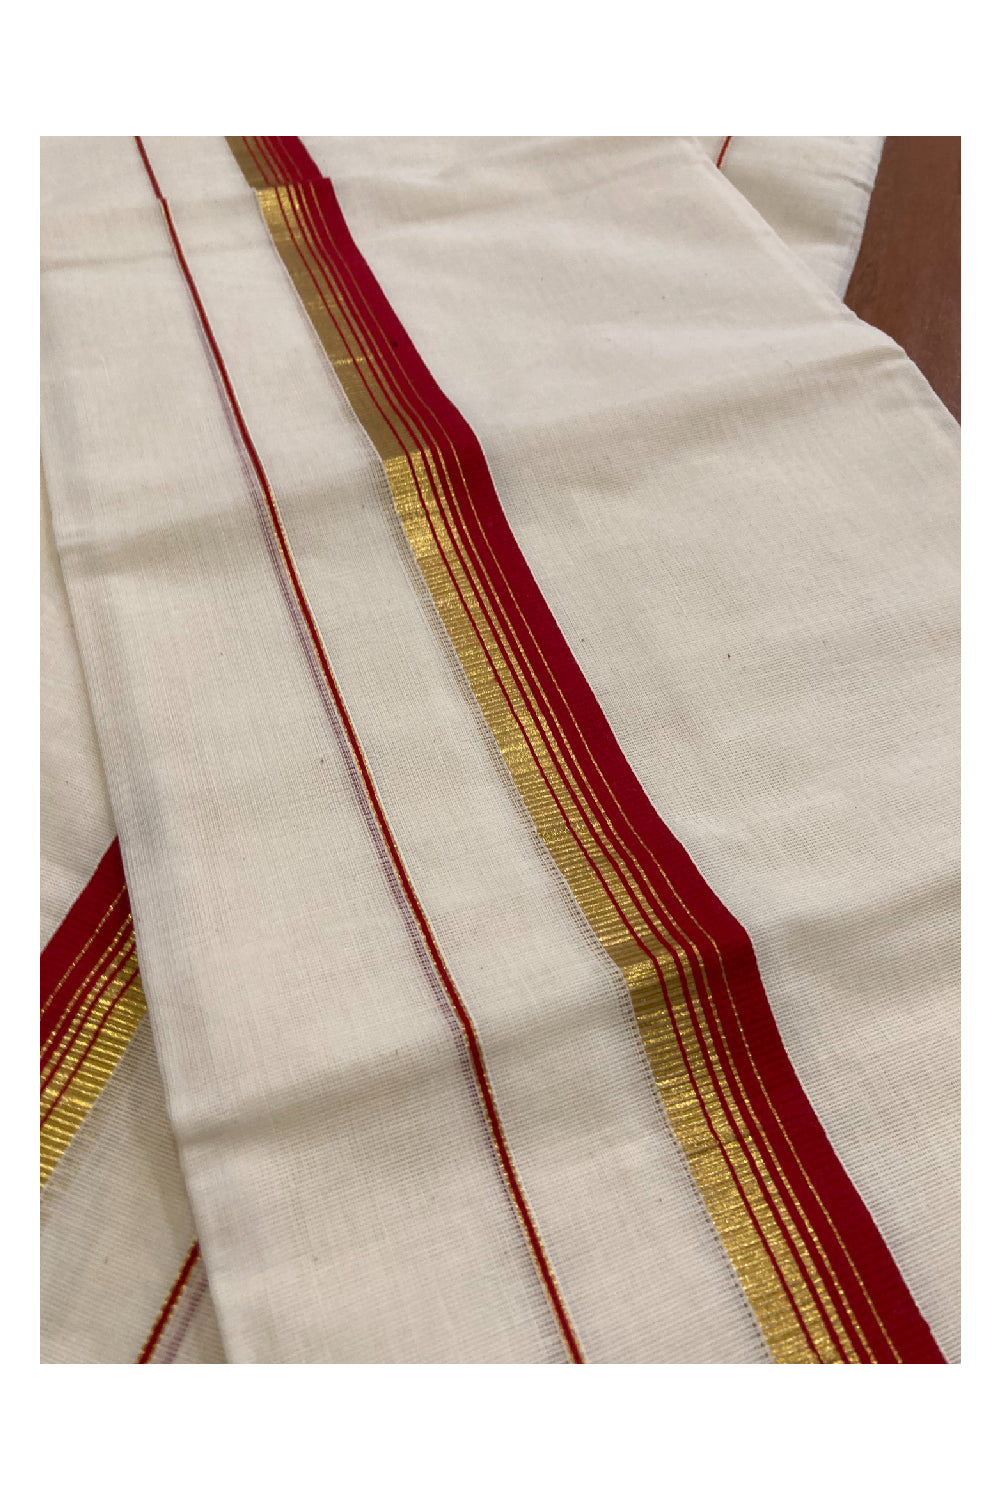 Kerala Cotton Mundum Neriyathum Double (Set Mundu) with Red and Kasavu Border